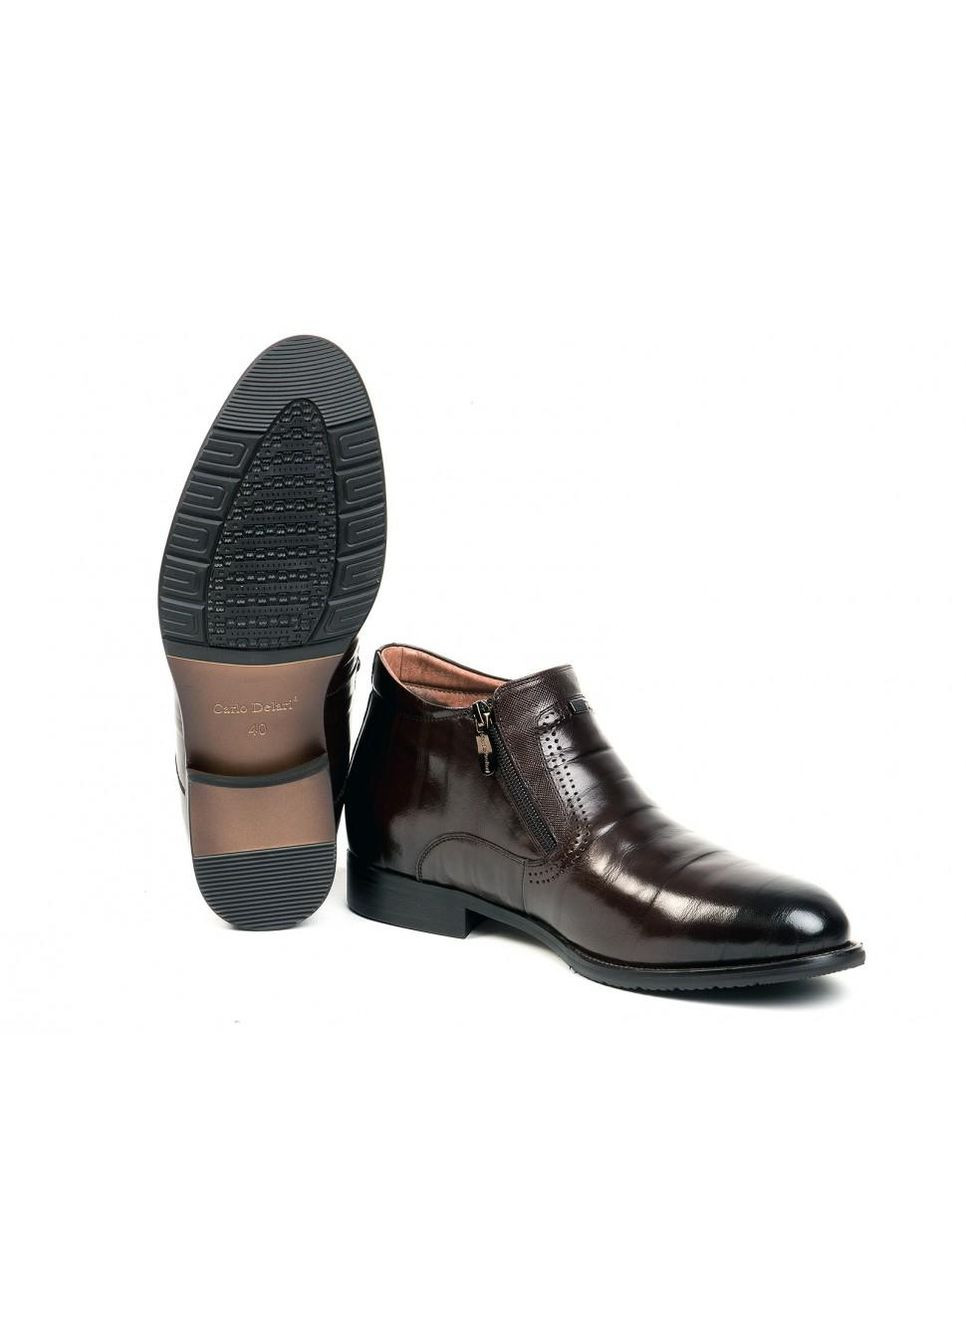 Коричневые зимние ботинки 7164110 цвет коричневый Carlo Delari